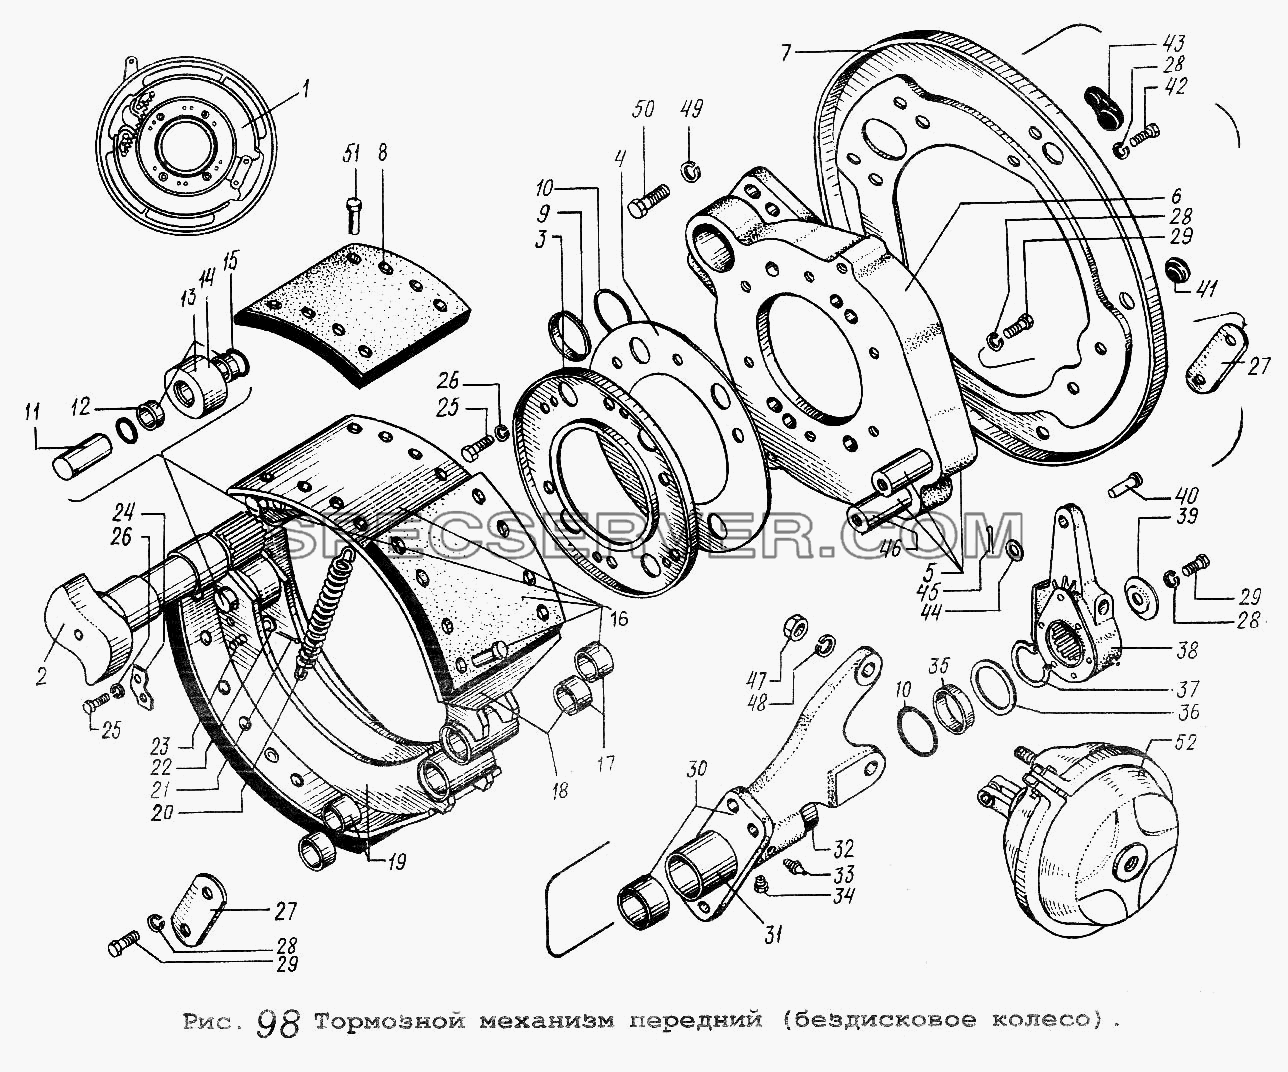 Тормозной механизм передний (бездисковое колесо) для МАЗ-64229 (список запасных частей)